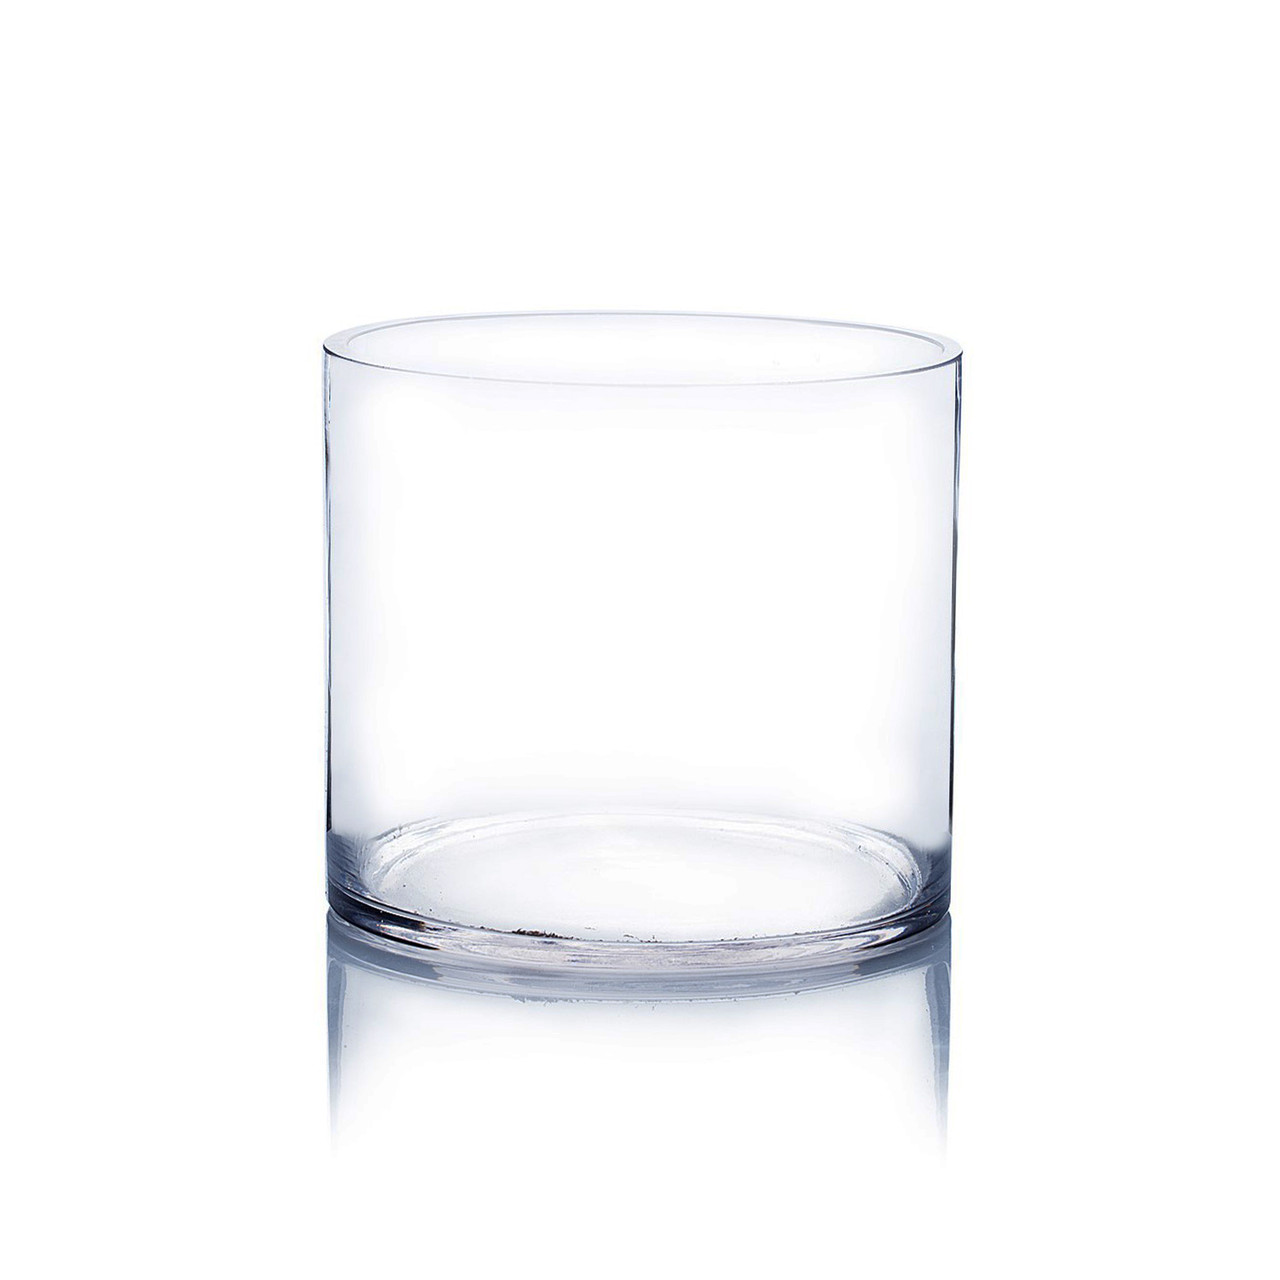 sammen tidsplan vokal VCY0606 - Cylinder Glass Vase - 6" x 6"